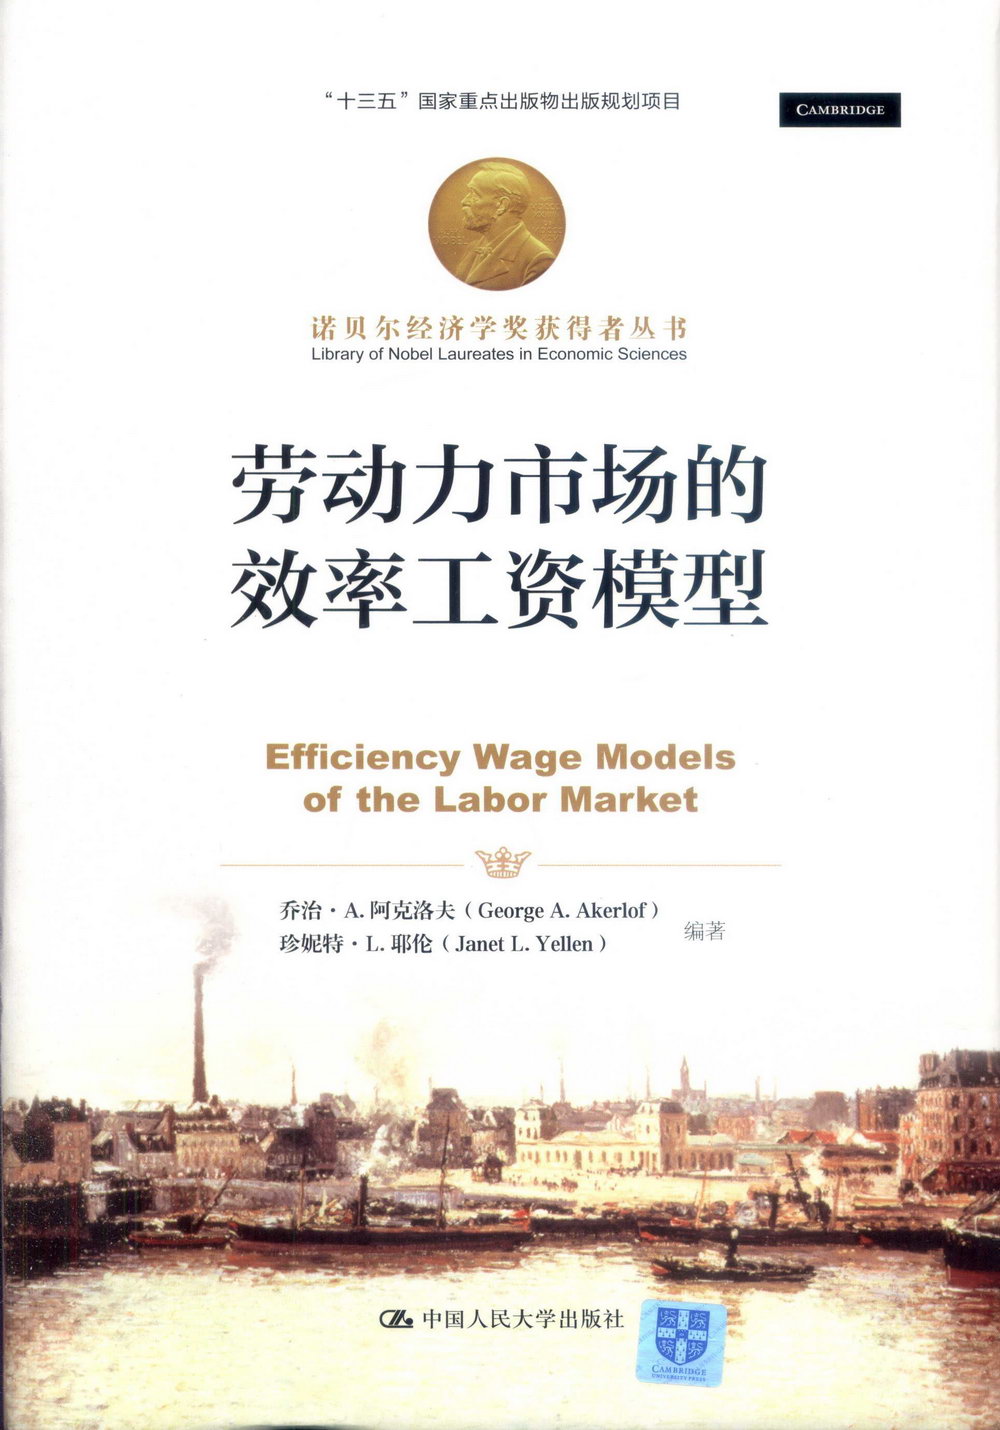 勞動力市場的效率工資模型